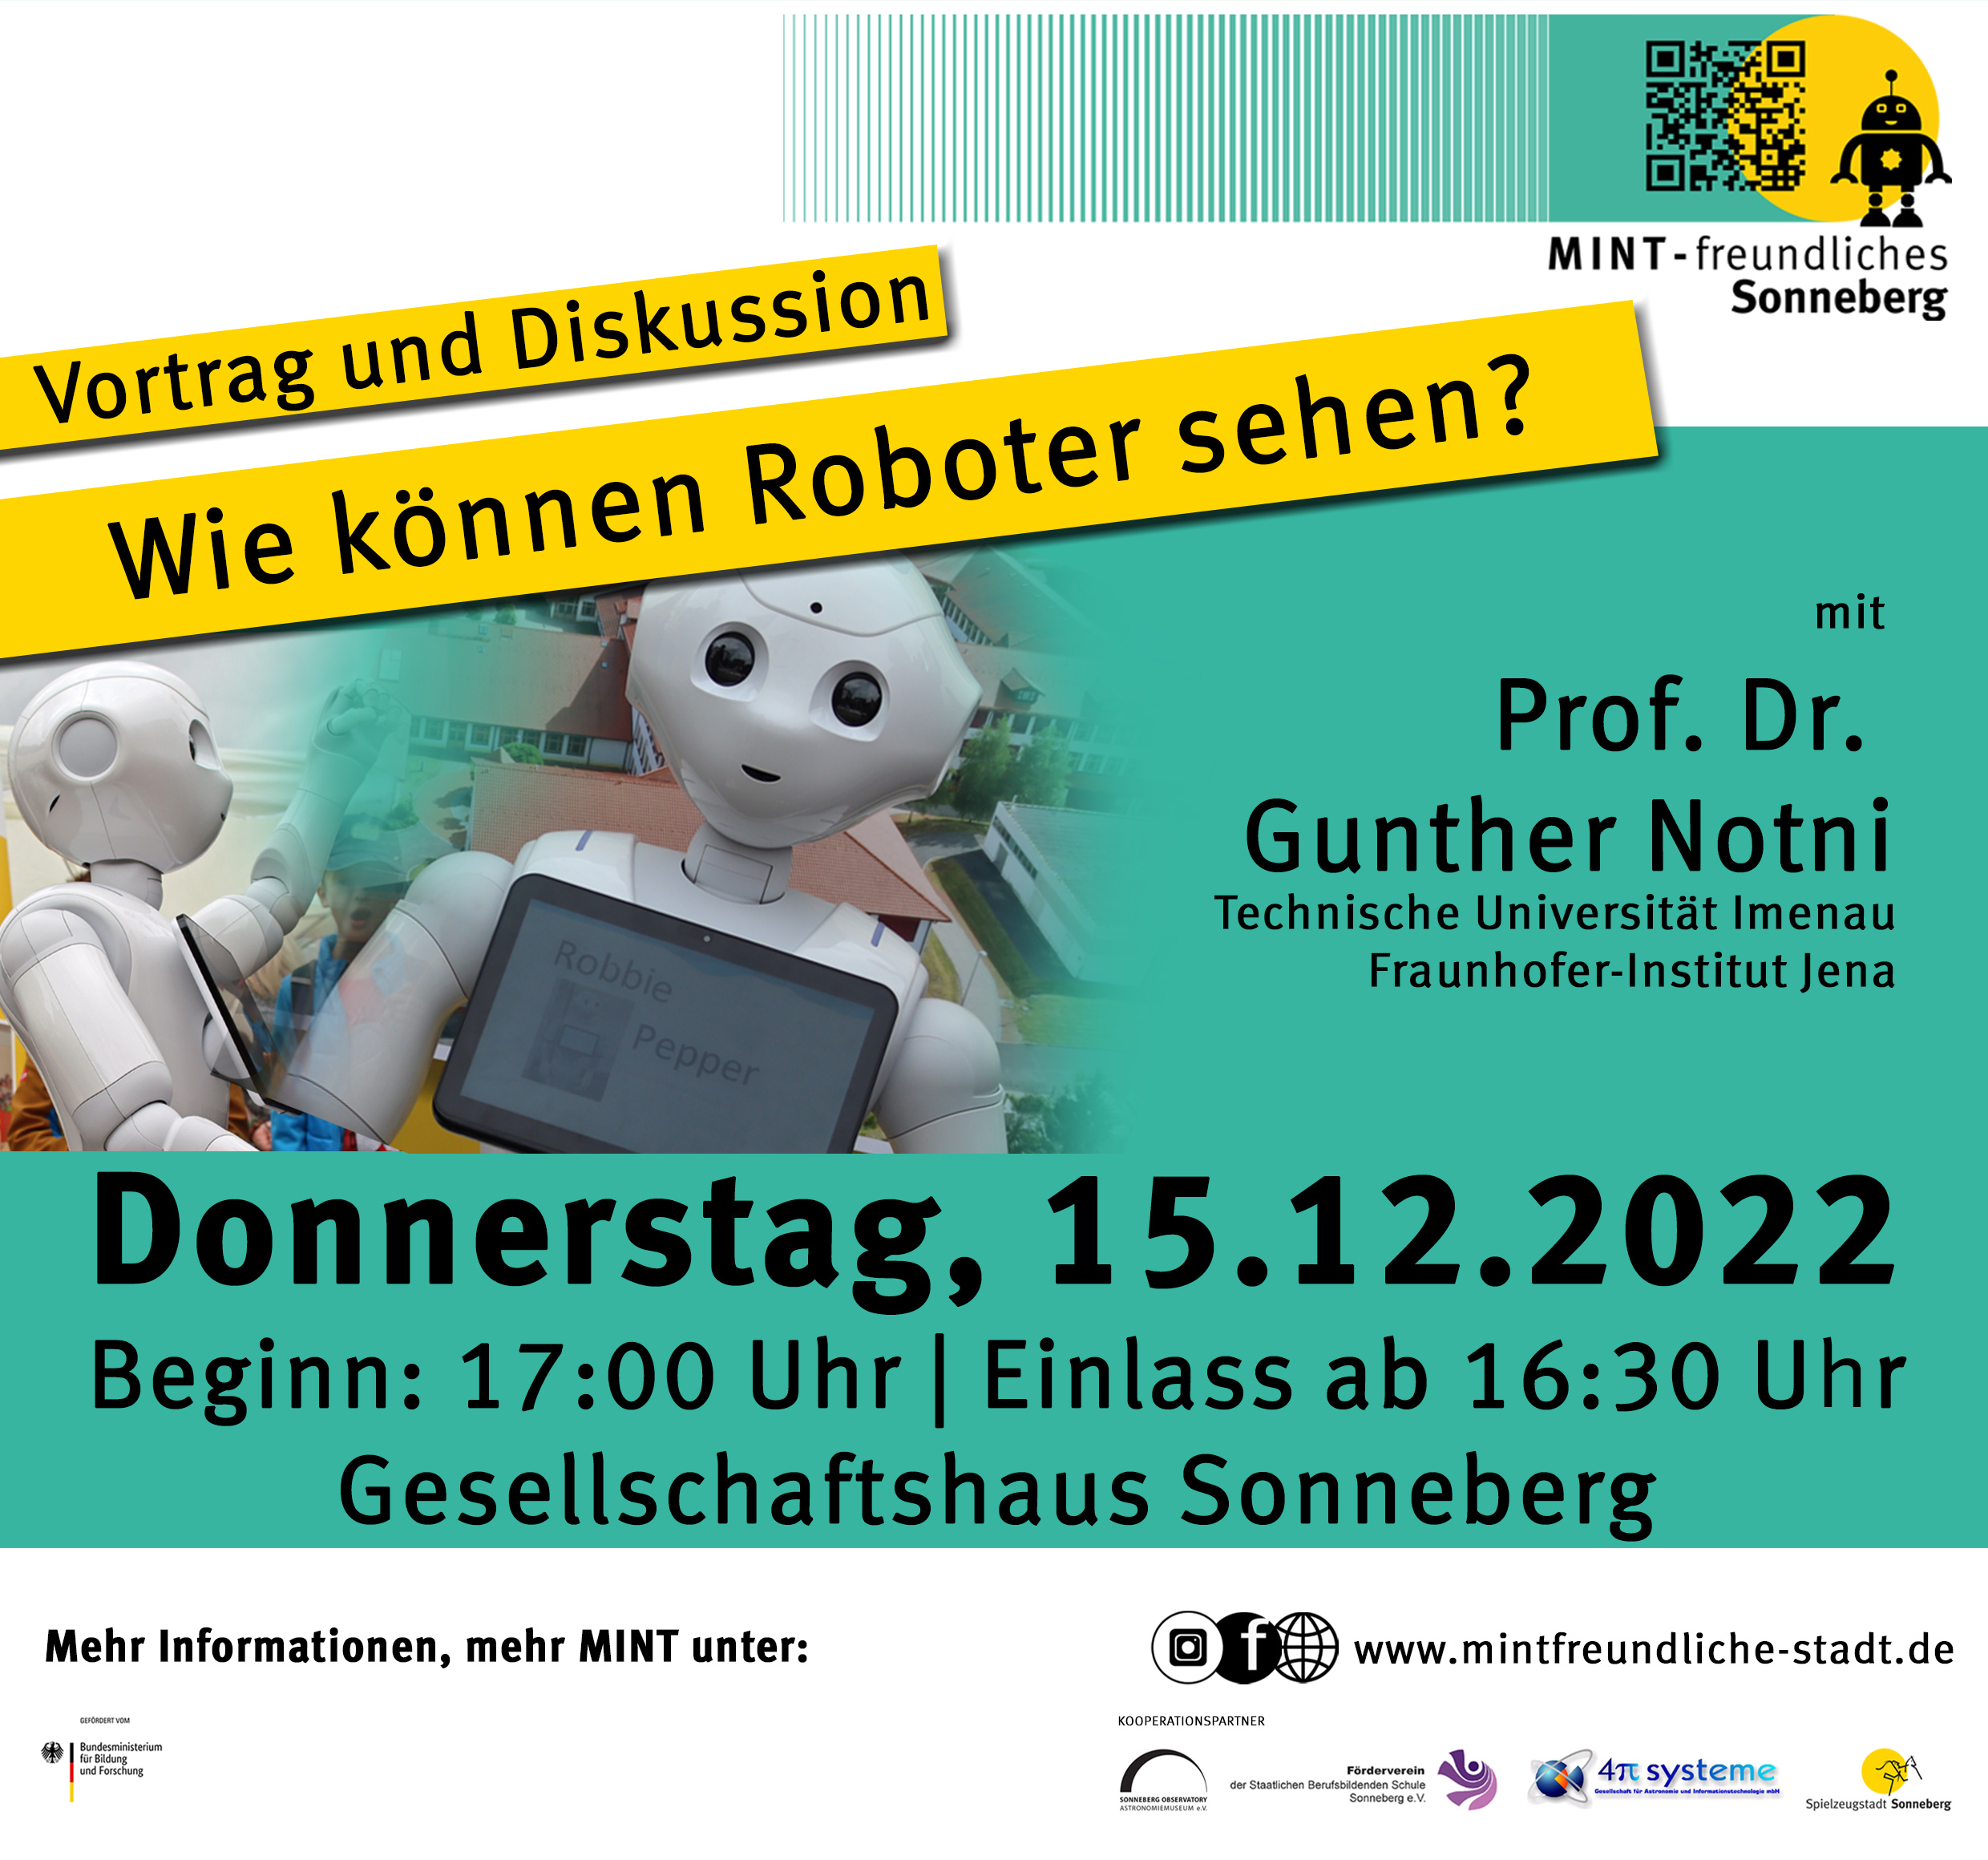 Ein Flyer mit der Aufschrift: Vortrag und Diskussion, Wie können Roboter sehen? mit Prof. Dr. Gunter Notni.